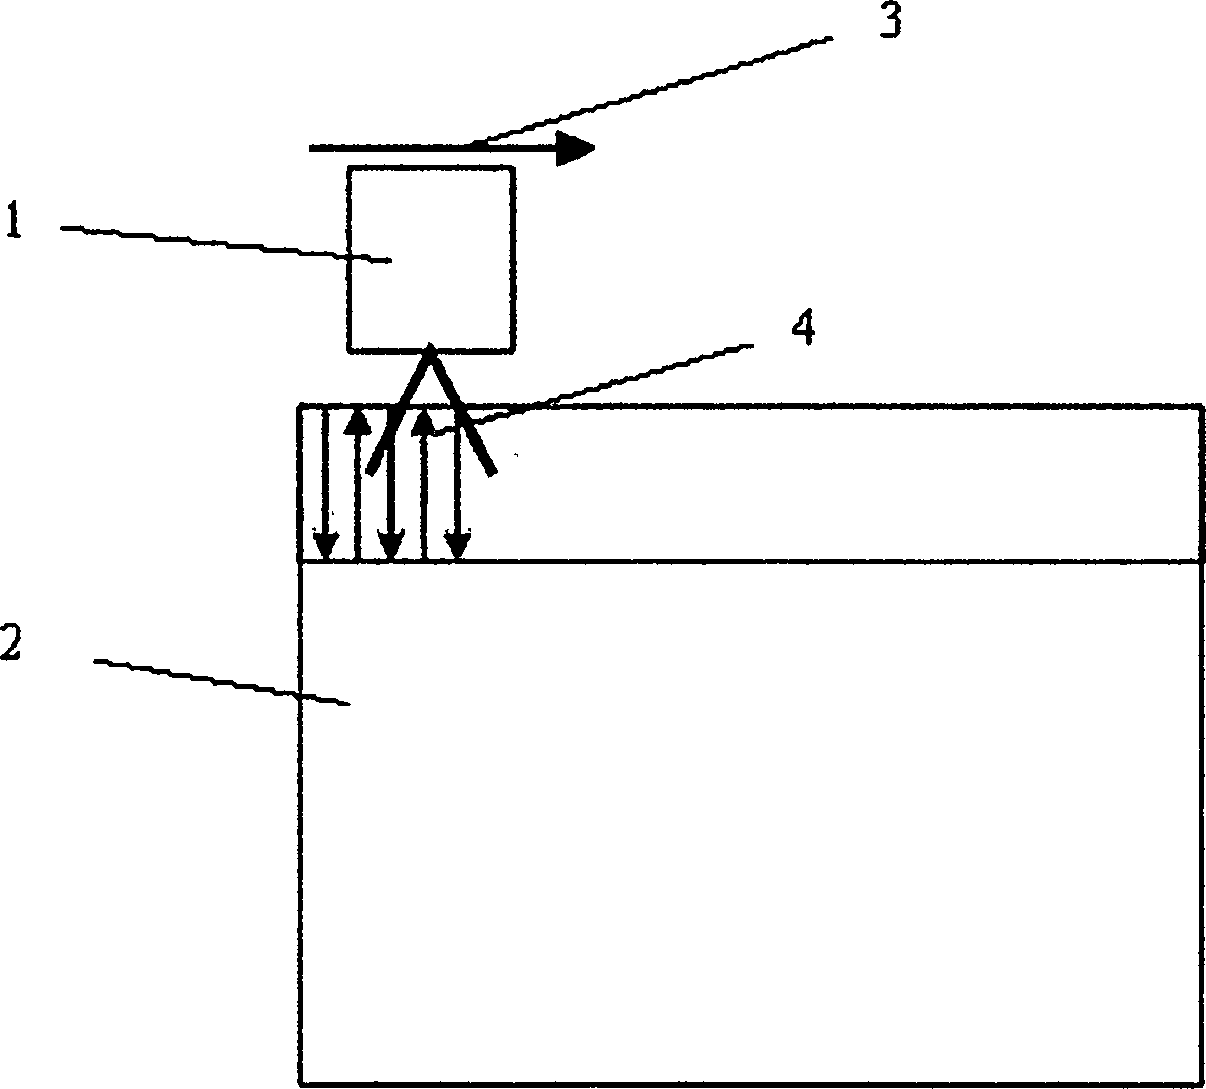 Large-area laser engraving method